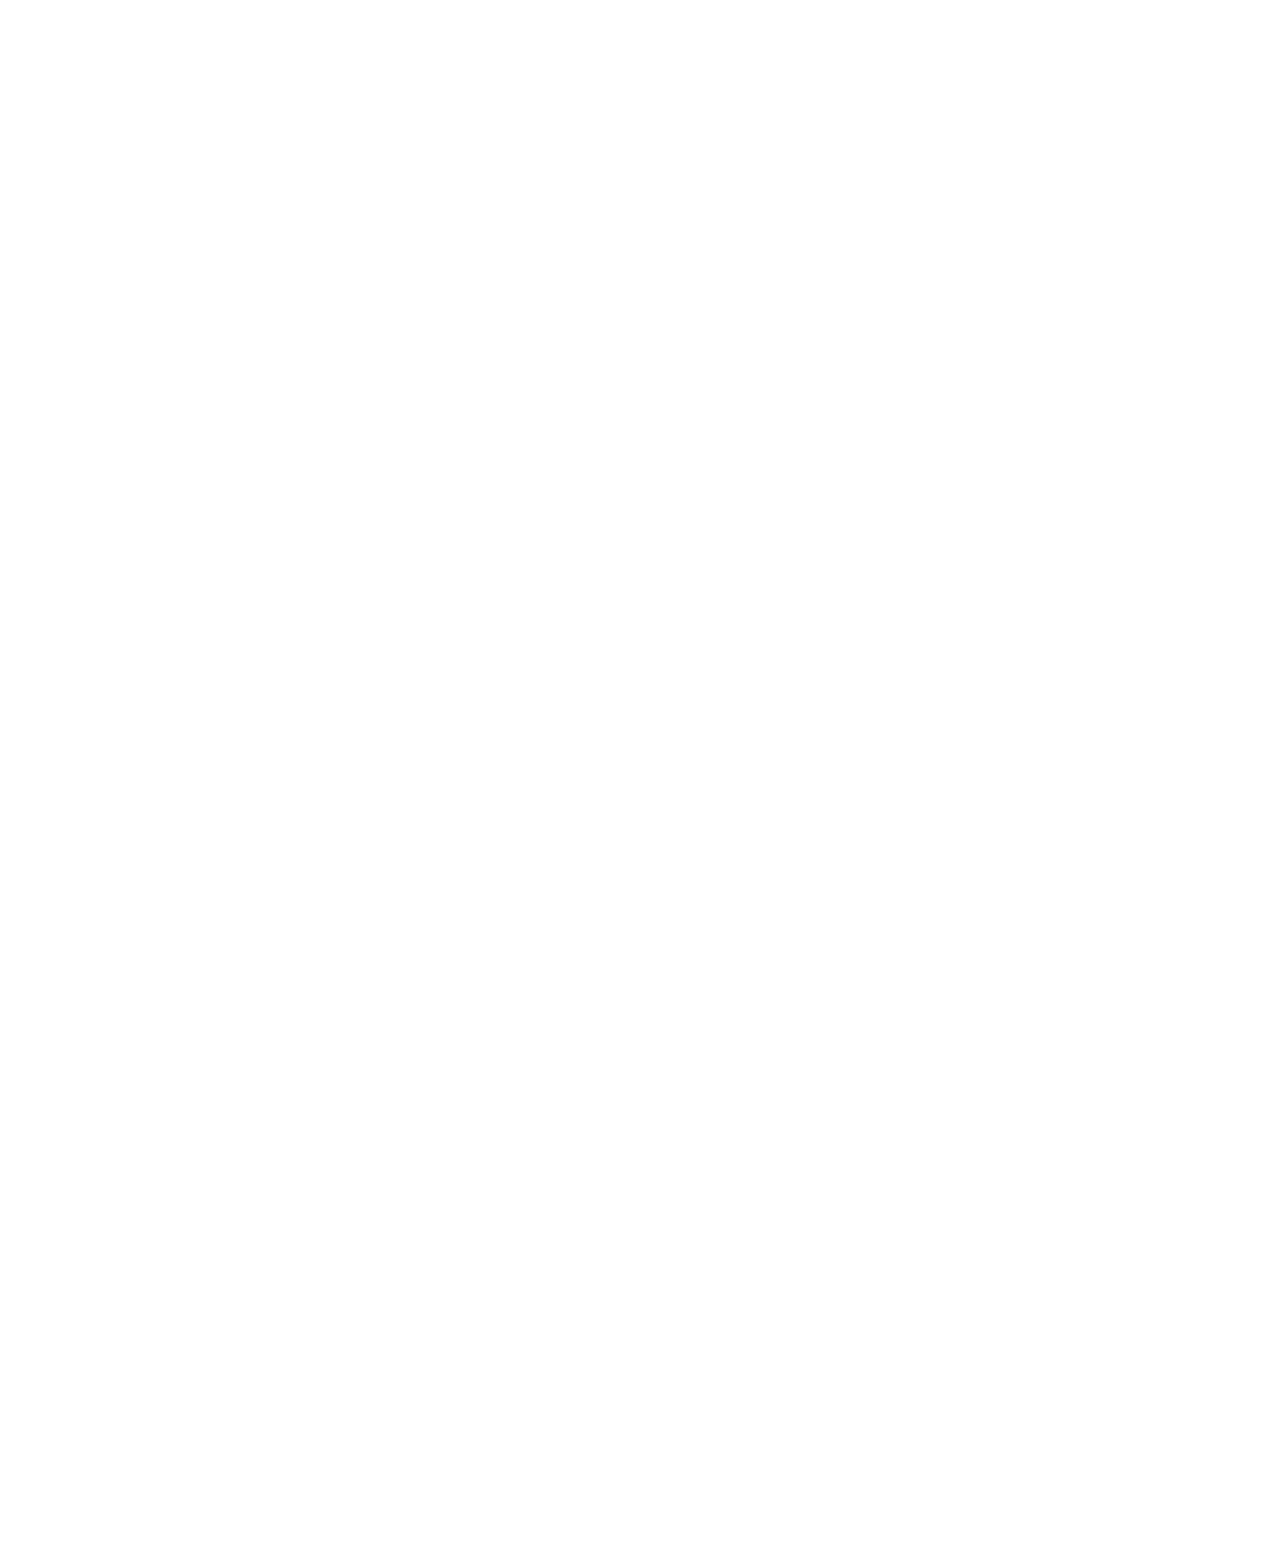 Dine Brands Global logo for dark backgrounds (transparent PNG)